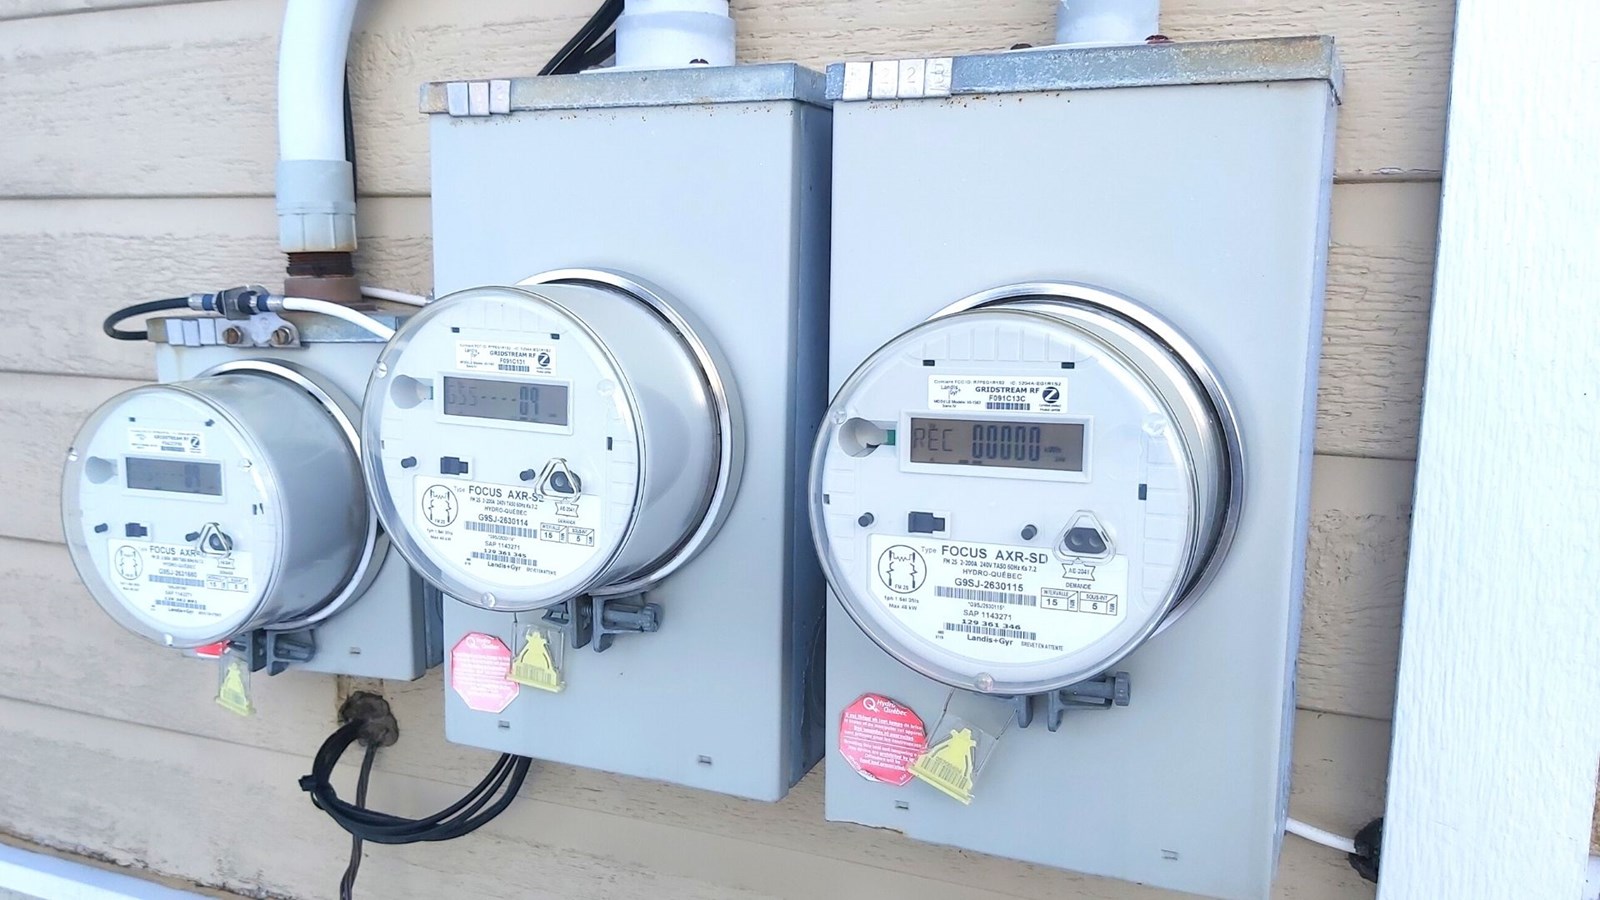 Existe t-il un moyen au Québec de mesurer sa consommation électrique en  temps réel? - Écohabitation